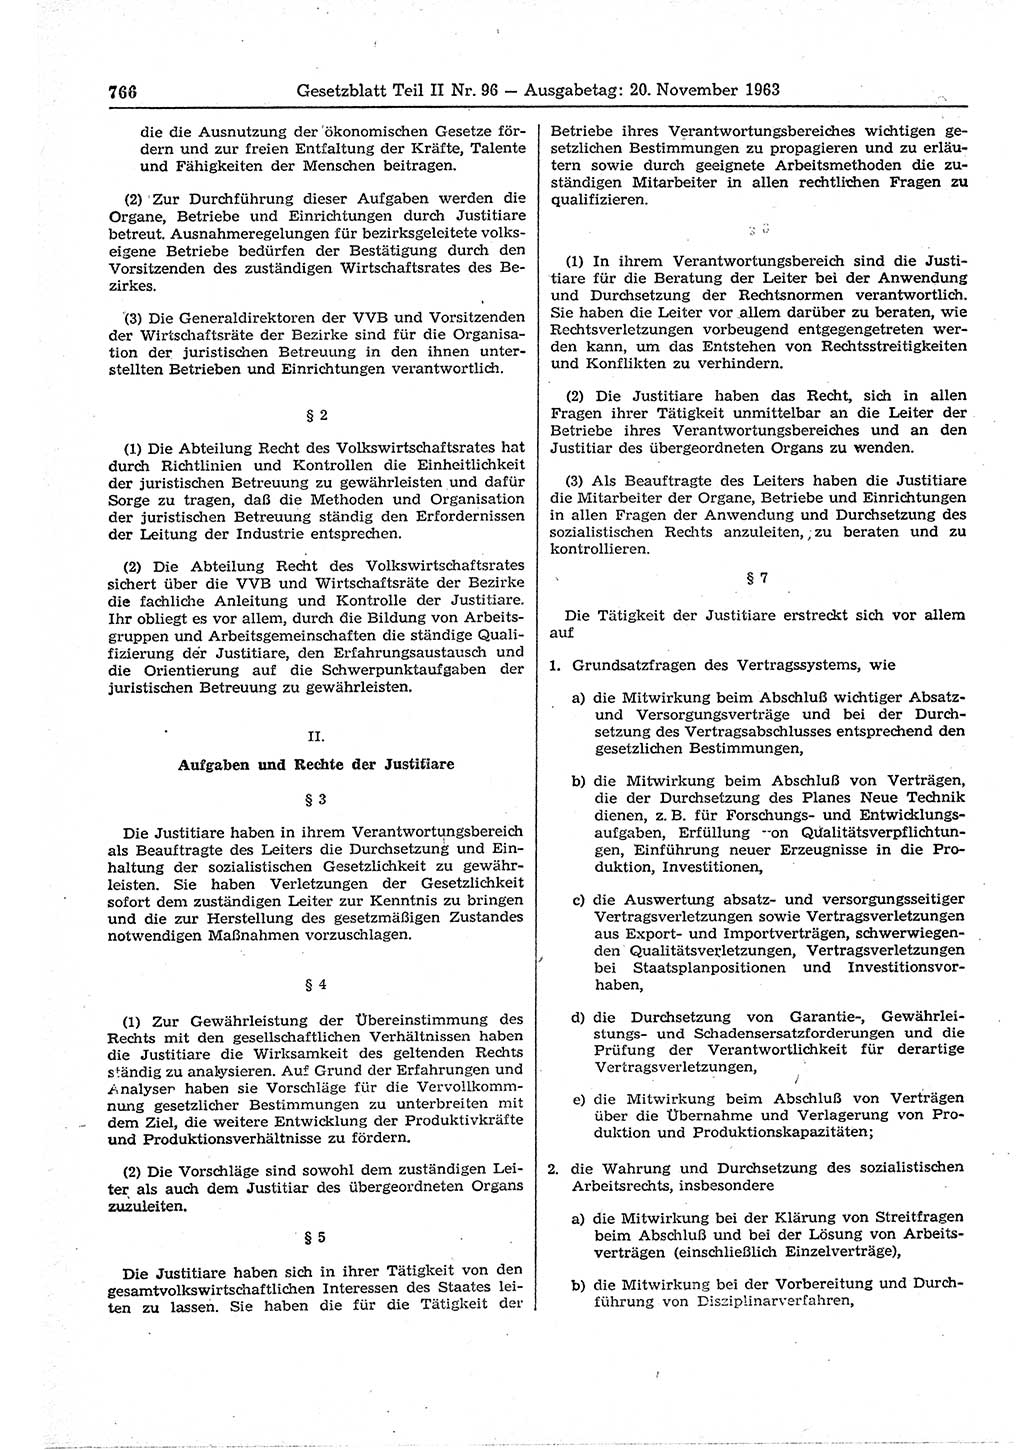 Gesetzblatt (GBl.) der Deutschen Demokratischen Republik (DDR) Teil ⅠⅠ 1963, Seite 766 (GBl. DDR ⅠⅠ 1963, S. 766)